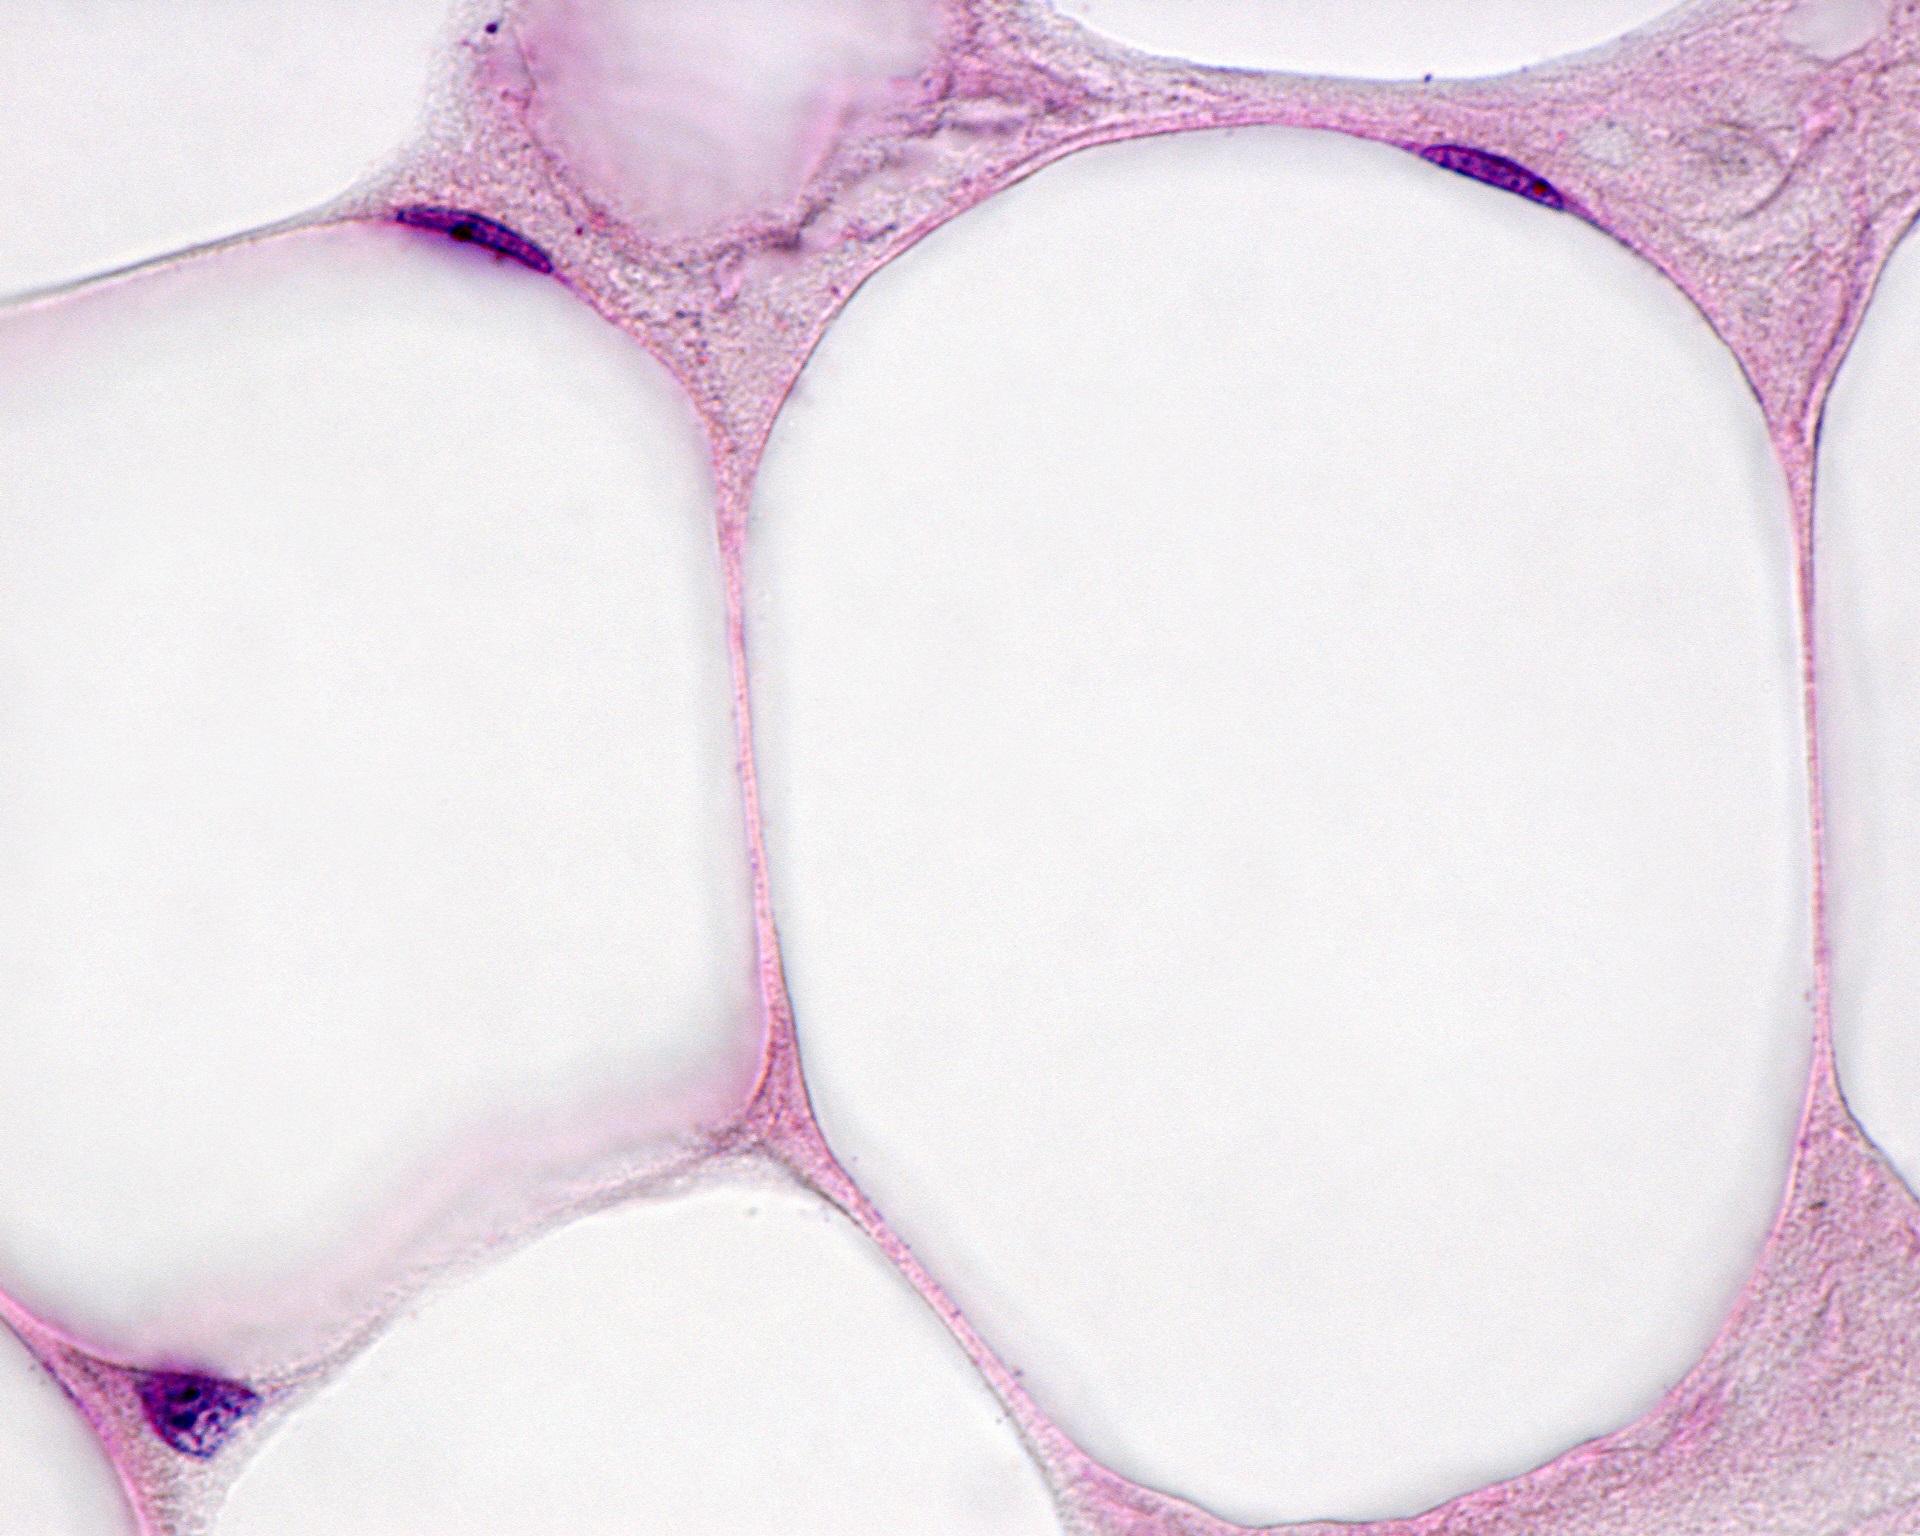 Dans les adipocytes du tissu adipeux blanc, le noyau est repoussé sur le bord à cause d'une&nbsp;grosse goutte de graisse. © Jose Luis Calvo, Shutterstock